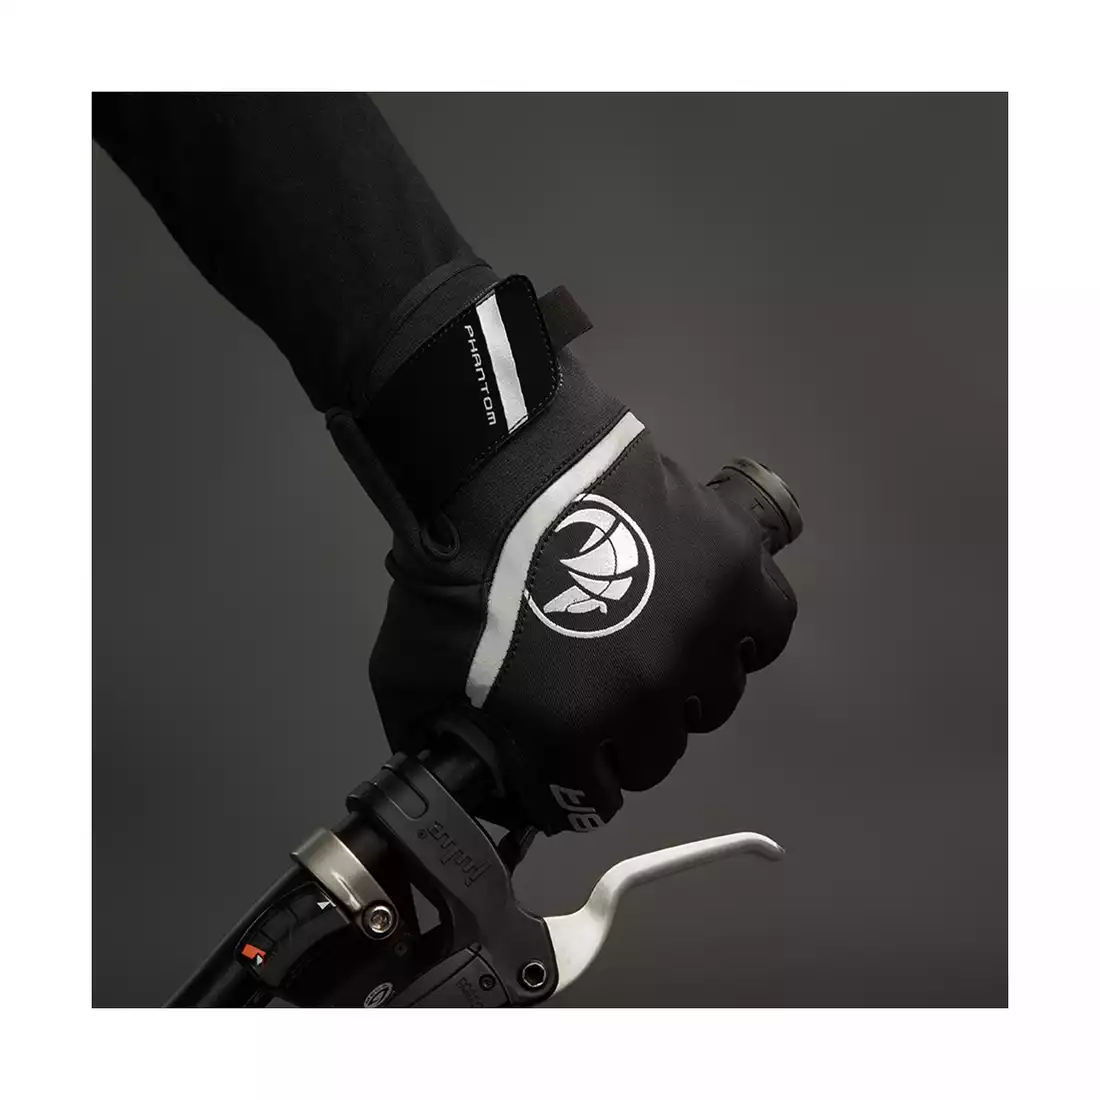 CHIBA PHANTOM zimní cyklistické rukavice black 3150520